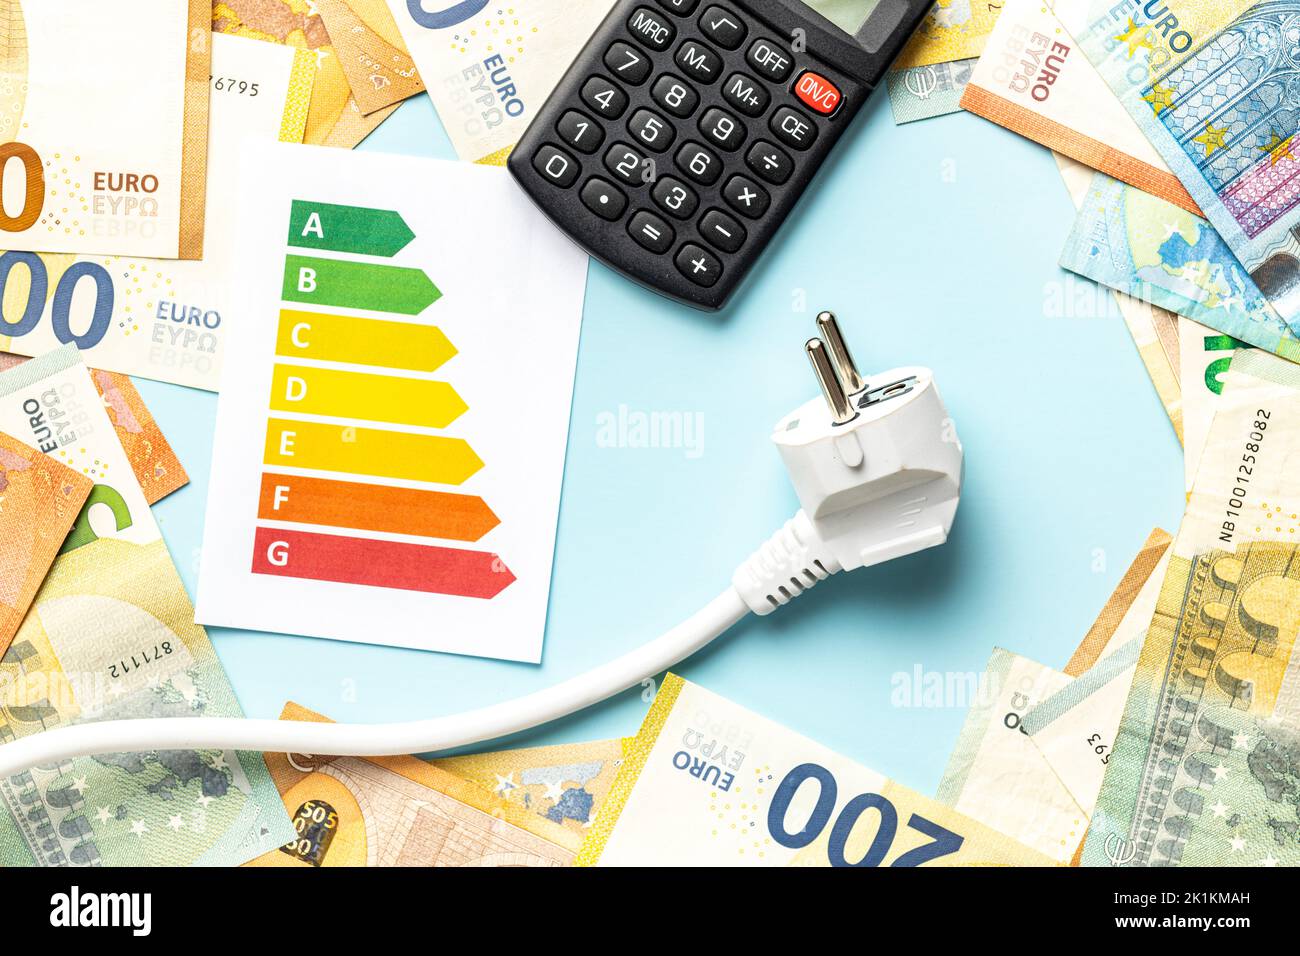 Elektrostecker, Rechner, Energielabel und Euro-Geld auf blauem Hintergrund. Konzept der steigenden Strompreise. Draufsicht. Stockfoto